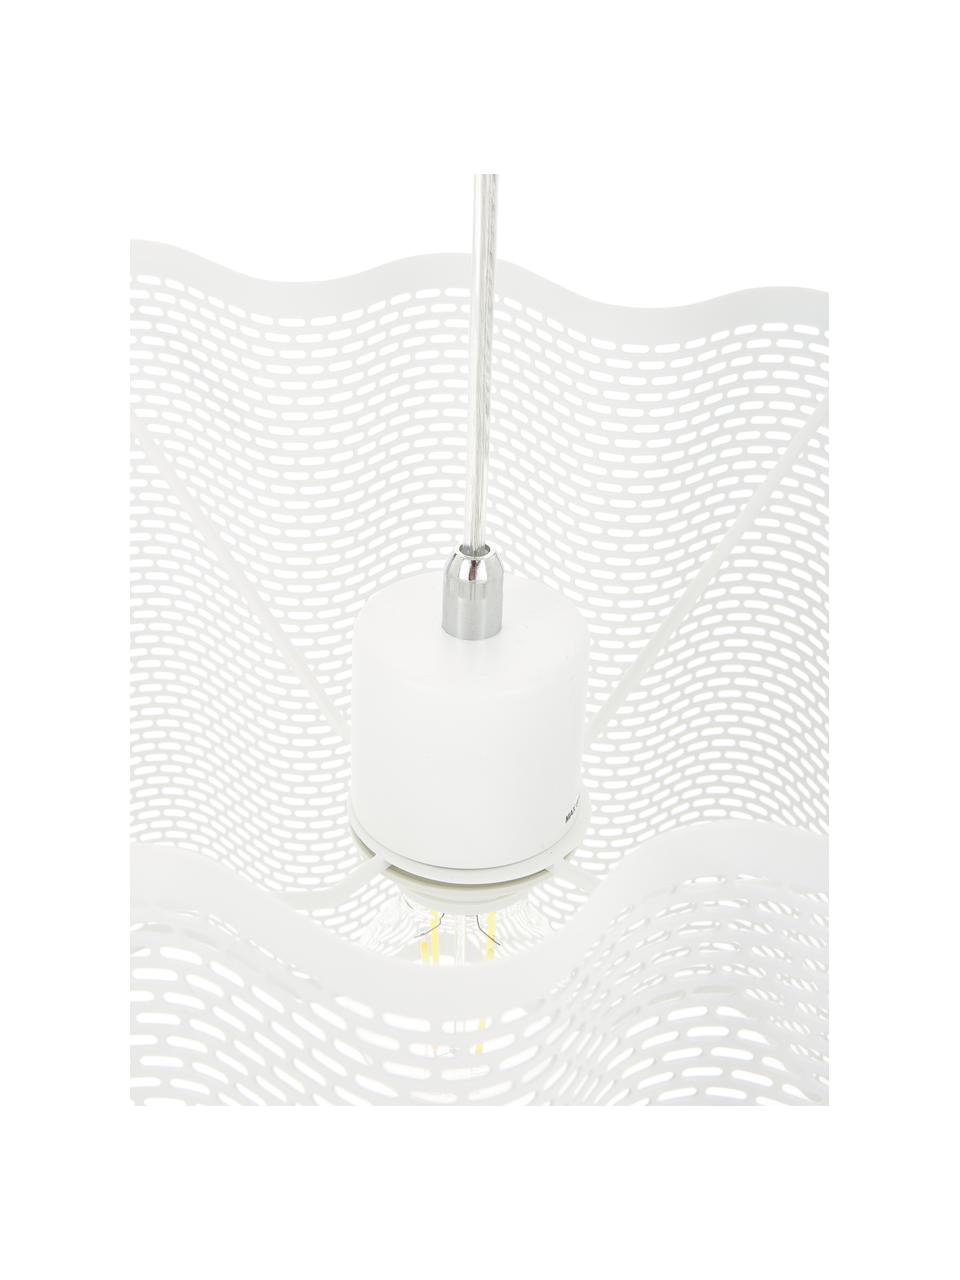 Ovale Pendelleuchte Glicine in Weiß, Lampenschirm: Metall, beschichtet, Baldachin: Metall, beschichtet, Weiß, 70 x 28 cm